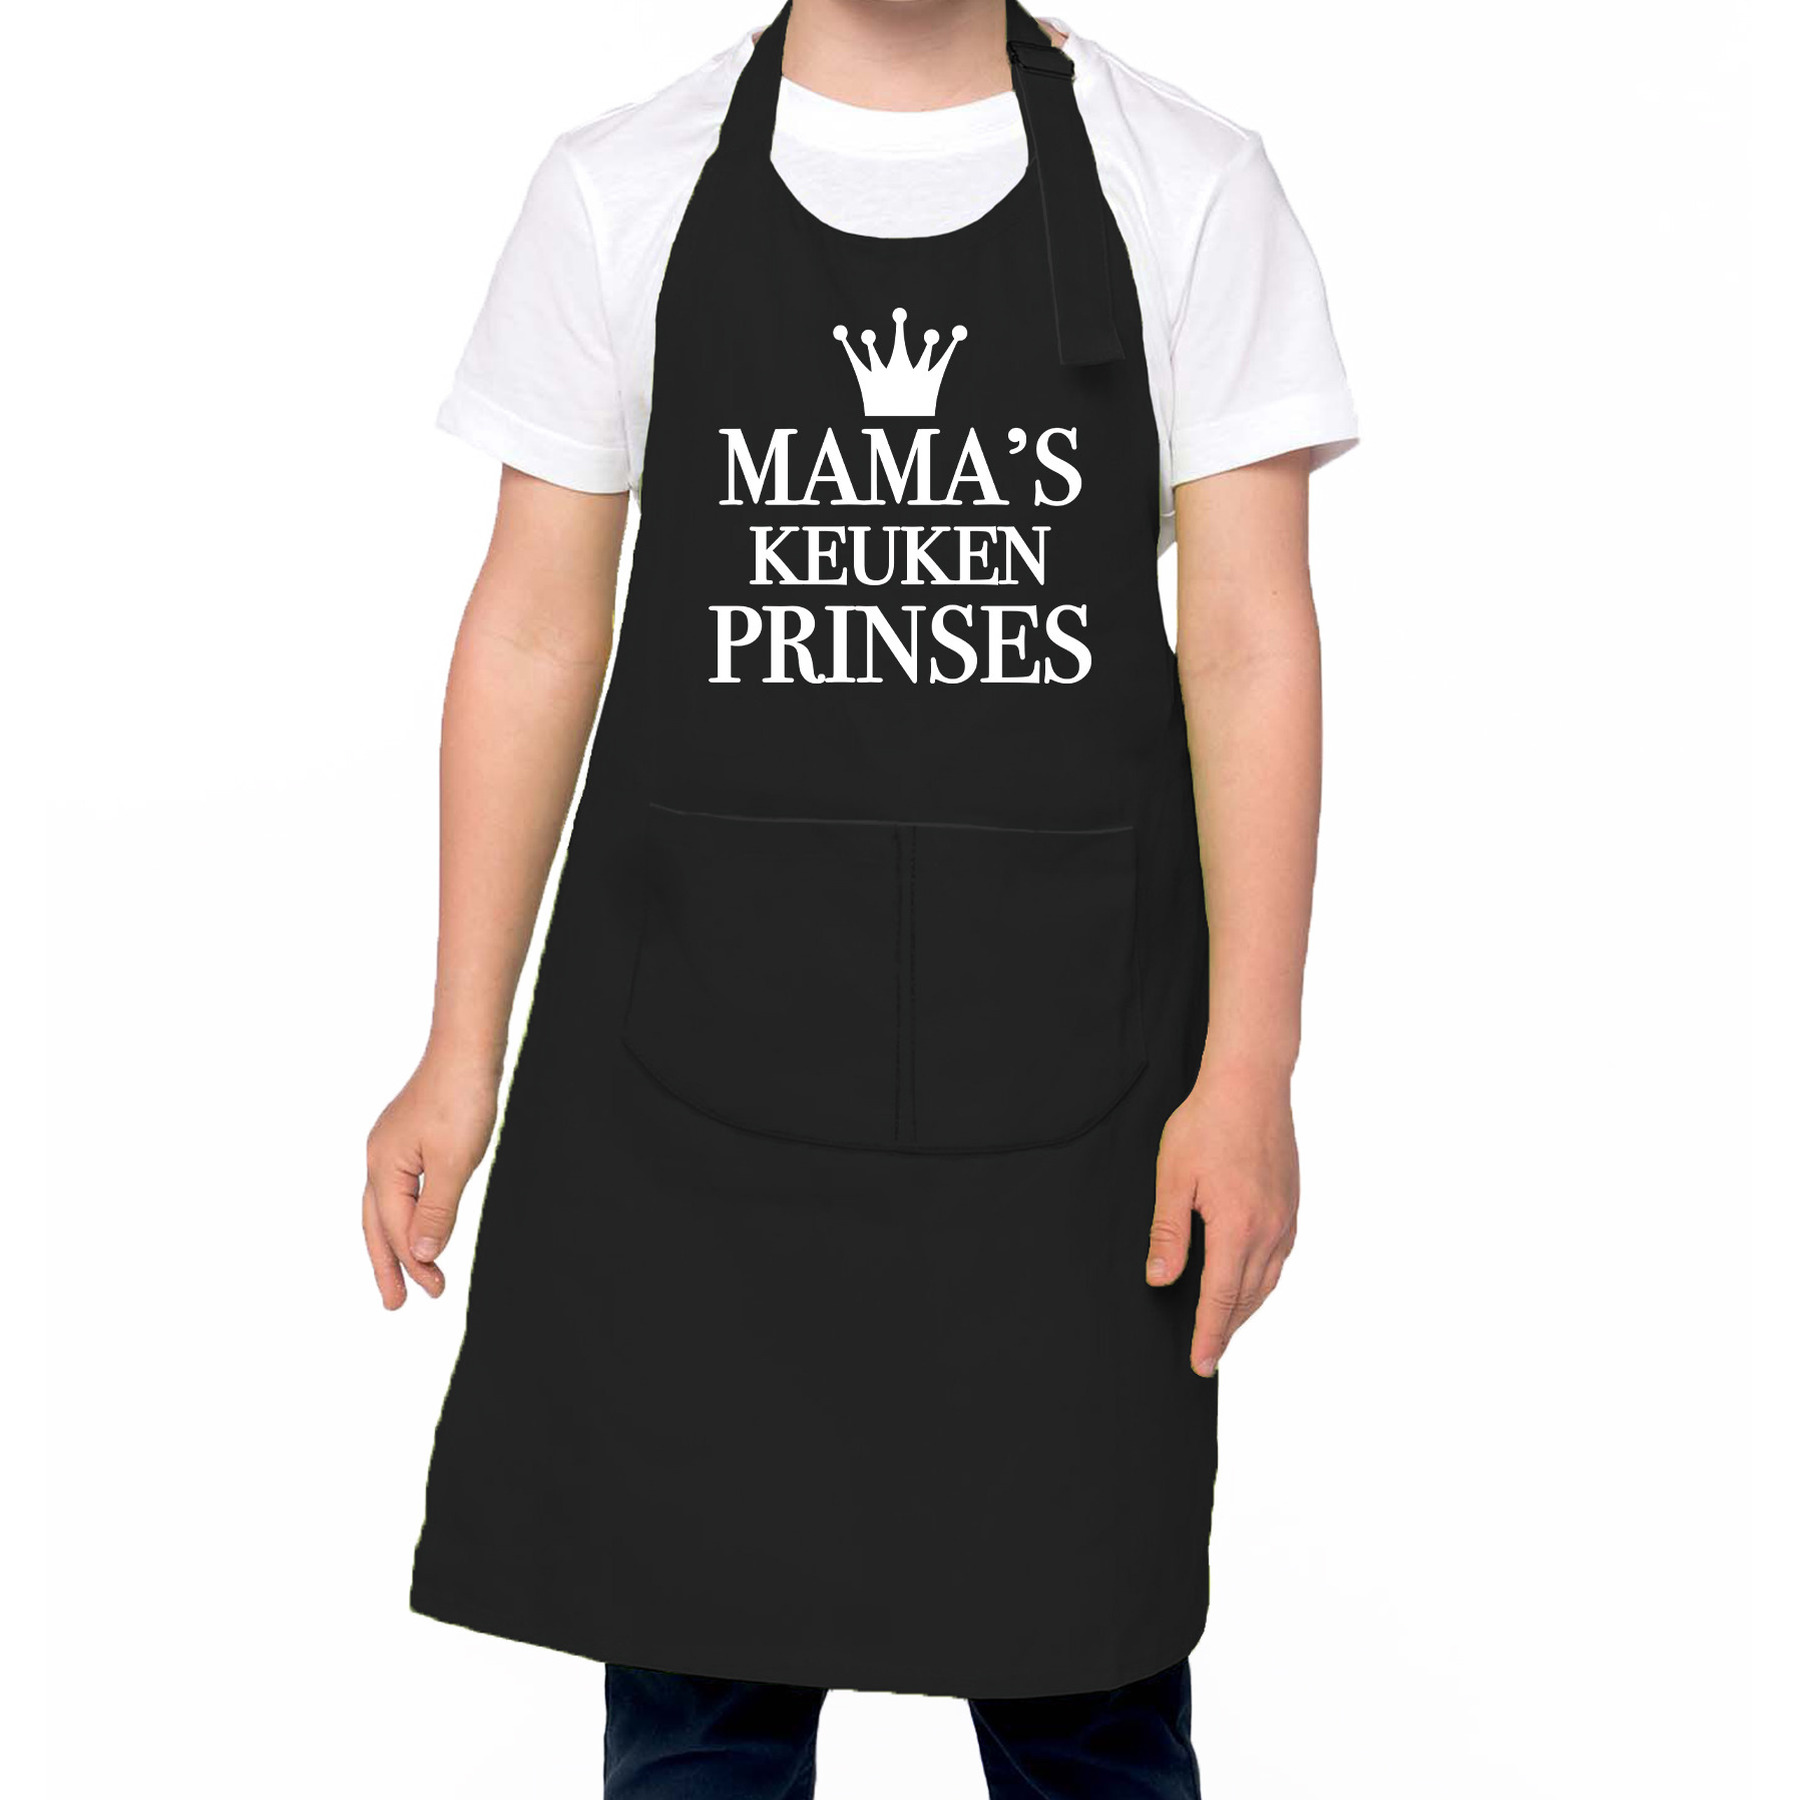 Mama s keukenprinses Keukenschort kinderen/ kinder schort zwart voor meisjes One size -